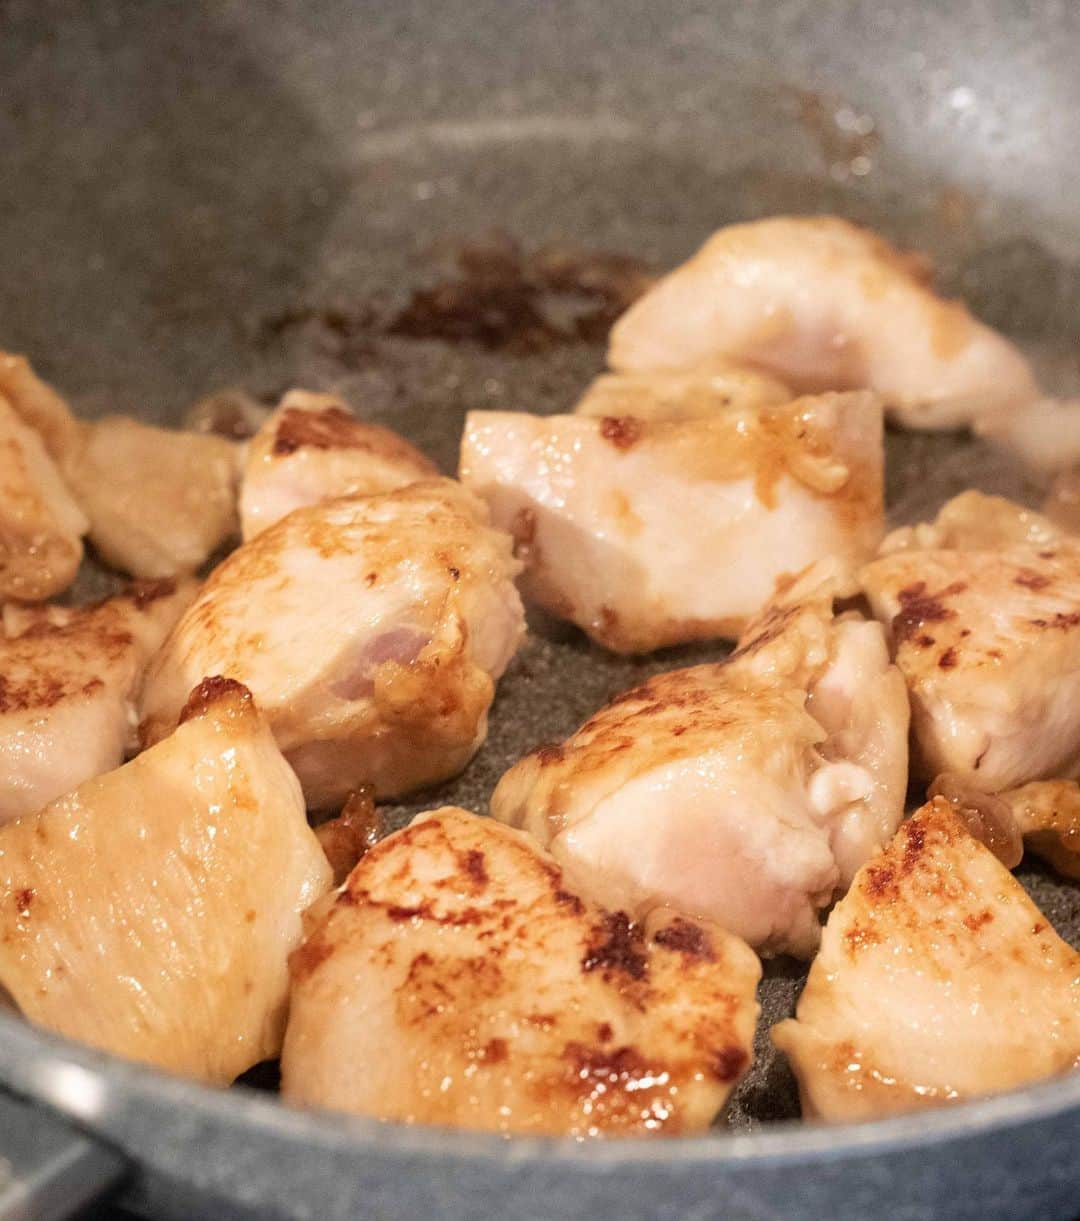 Iguchi Takuto... おうちごはんおじさんさんのインスタグラム写真 - (Iguchi Takuto... おうちごはんおじさんInstagram)「🍳Today’s kitchen(📝レシピあり)﻿ •鶏むね肉と茄子のオイスター炒め﻿ 最近ダイエット思考強めなので、鶏むねレシピをいろいろ開発中😙﻿ これめちゃめちゃ美味しいのでやってみて下さい😚﻿ ﻿ 🐔材料﻿ ・鶏むね肉……1枚﻿ ・茄子……1本﻿ ・ピーマン……3個(緑2個/赤1個)﻿ ・サラダ油……大さじ3﻿ ・塩……1つまみ﻿ ・オイスターソース……大さじ1.5﻿ ★片栗粉……小さじ2﻿ ★みりん……大さじ1﻿ ★酒……大さじ1﻿ ★醤油……大さじ1﻿ ﻿ 🔪下準備﻿ ・鶏むね肉・茄子・ピーマンを大きめにカットする﻿ ・ボウルに鶏むね肉を入れ、★の調味料を混ぜ合わせ、10分ほど馴染ませる﻿ ﻿ ﻿ 🍳作り方﻿ 1. フライパンにサラダ油をひき、中火で鶏肉を全面じっくり焼く﻿ 2. 茄子とピーマンを入れ、塩を振り、炒める﻿ 3. オイスターソースを入れ、さっと炒めて完成﻿ ﻿ 📝ポイント﻿ ・大きめにカットすること﻿ ・強火にしすぎず、鶏むね肉にじっくり火を通すこと﻿ この2つで、しっとりジューシーに仕上がります。﻿ ﻿ ﻿ 是非お試しください😝﻿ ﻿ ﻿ 美味しいで日本を元気に꒰⍨꒱.+*﻿ ﻿ ━…━…━…━…━…━…━…━…━…━﻿ ﻿ ▼.YouTube始めました🍳﻿ 【らくうまチャンネル】と検索して下さい。﻿ 簡単×美味しい料理はもちろん、﻿ <食をエンターテイメントに💐>をテーマに、﻿ 楽しいコンテンツをたくさん投稿していきます！﻿ 是非チャンネル登録お願いします🙇‍♂️﻿ https://www.youtube.com/channel/UCU8N32A-DZ4aGMH1YZ06gYA﻿ ﻿ ▼.料理教室主宰しています🍳(..開講祝1年💐)﻿ Foodies Labo(@foodies_labo)﻿ 簡単×美味しいに拘り、都内で料理教室を開催しています。﻿ 料理初心者•初参加の方•お友達との参加も大歓迎🙆‍♂️🙆‍♀️﻿ まずは気軽にフォローして下さい！﻿ ﻿ ▼.デリバリー専門のレストランを始めました🍴 ﻿ Foodies Tokyo(@foodies_tokyo)﻿ 不定期での営業となりますが、﻿ Uber Eatsに出店しています！﻿ イベントなども都度行っていますので、﻿ 詳しくは、公式アカウントをご覧下さい！﻿ ﻿ ▼.ストーリーズのハイライトをまとめました🎥﻿ 過去にストーリーズで配信した、イベントの様子や、﻿ 企業さまとのお仕事、日々の料理のシーン、﻿ 自身の掲載記事など、アイコン毎にまとめています。﻿ ご興味ある方はご覧下さい！﻿ ﻿ ━…━…━…━…━…━…━…━…━…━﻿ #らくうま飯#らくうま料理#らくうま料理家#らくうま料理研究家#料理家#料理研究家#フードスタイリスト#井口タクト#おうちごはん#おうちごはんおじさん#おうちごはんLover#料理男子#家庭料理#簡単料理#時短料理#簡単ごはん#料理記録#飯テロ#マカロニメイト#料理好きな人と繋がりたい#Foodstylist#ouchigohan_ojisan#IGersJP#japanesefood﻿ #らくうまレシピ#おうちごはんおじさんのレシピ #時短レシピ #簡単レシピ #レシピ#鶏むね肉」8月7日 18時22分 - ouchigohan_ojisan